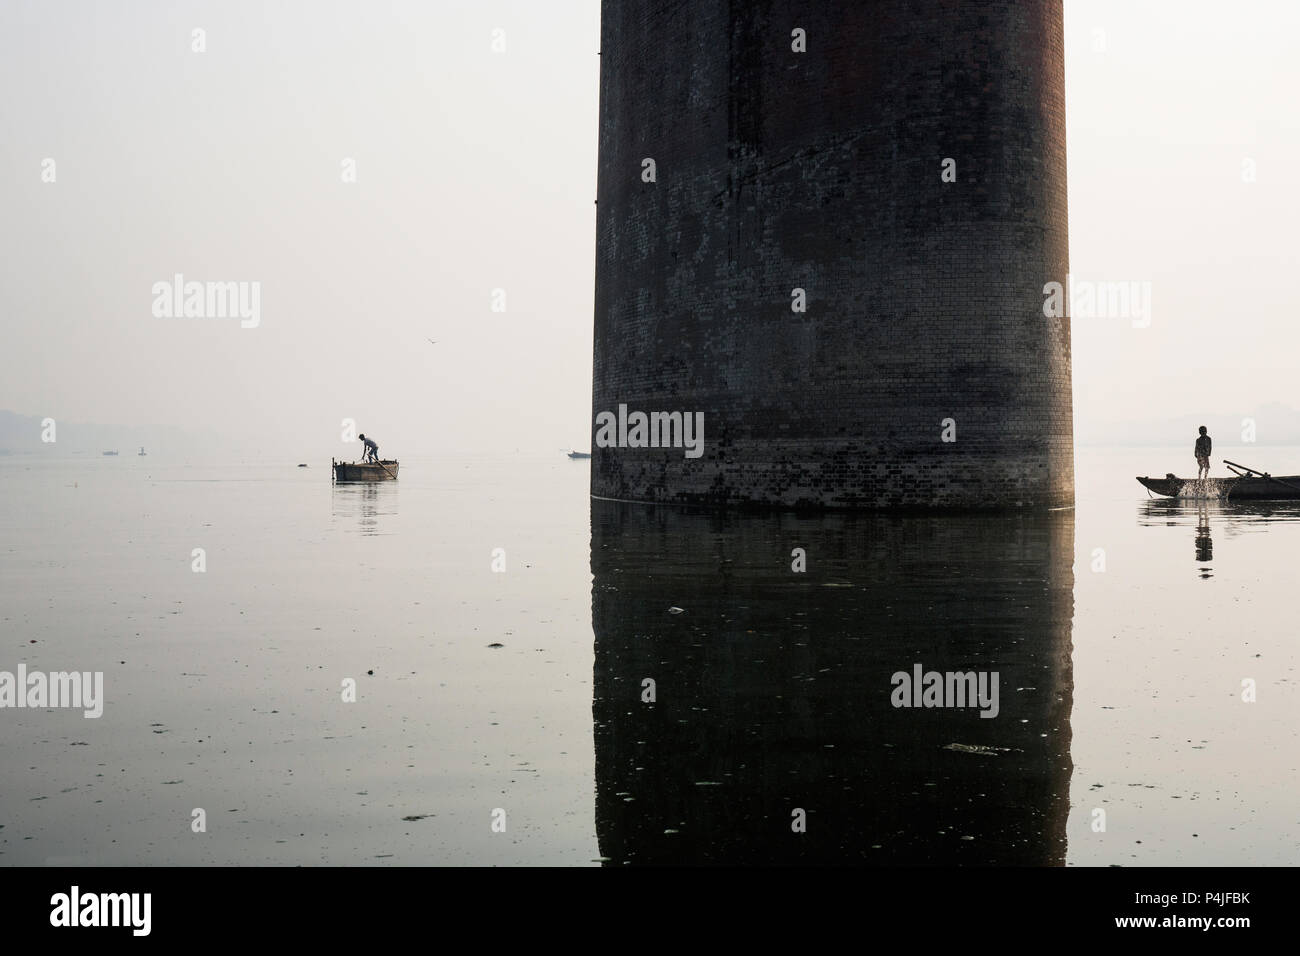 Fishing boat silhouette with Mawlamyine Malviya Bridge background Stock Photo